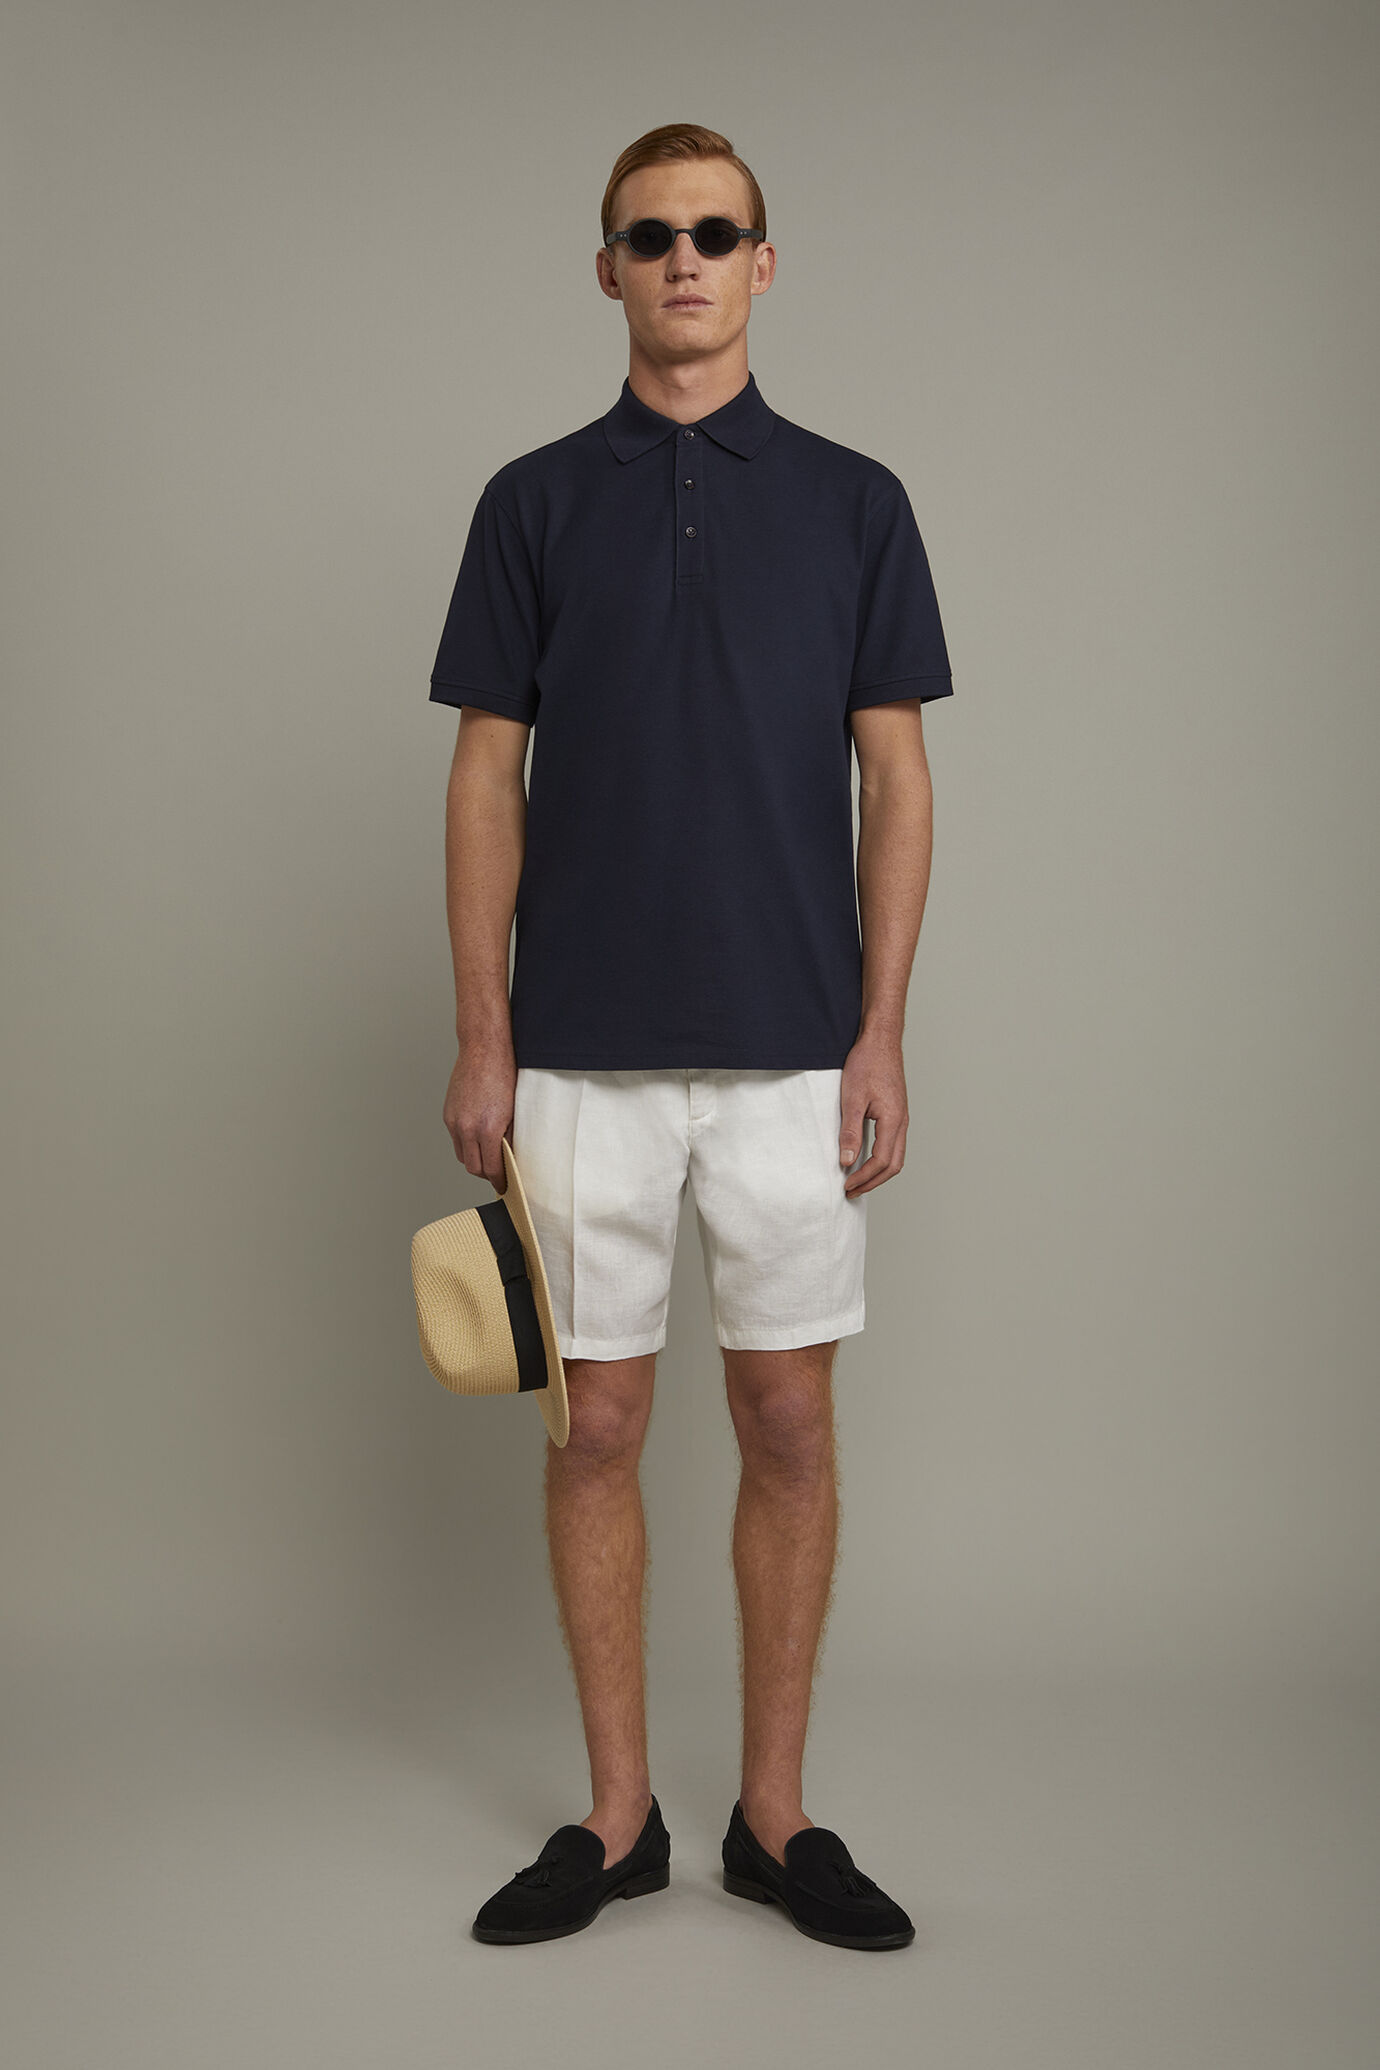 Men’s short sleeve polo shirt 100% piquet cotton regular fit